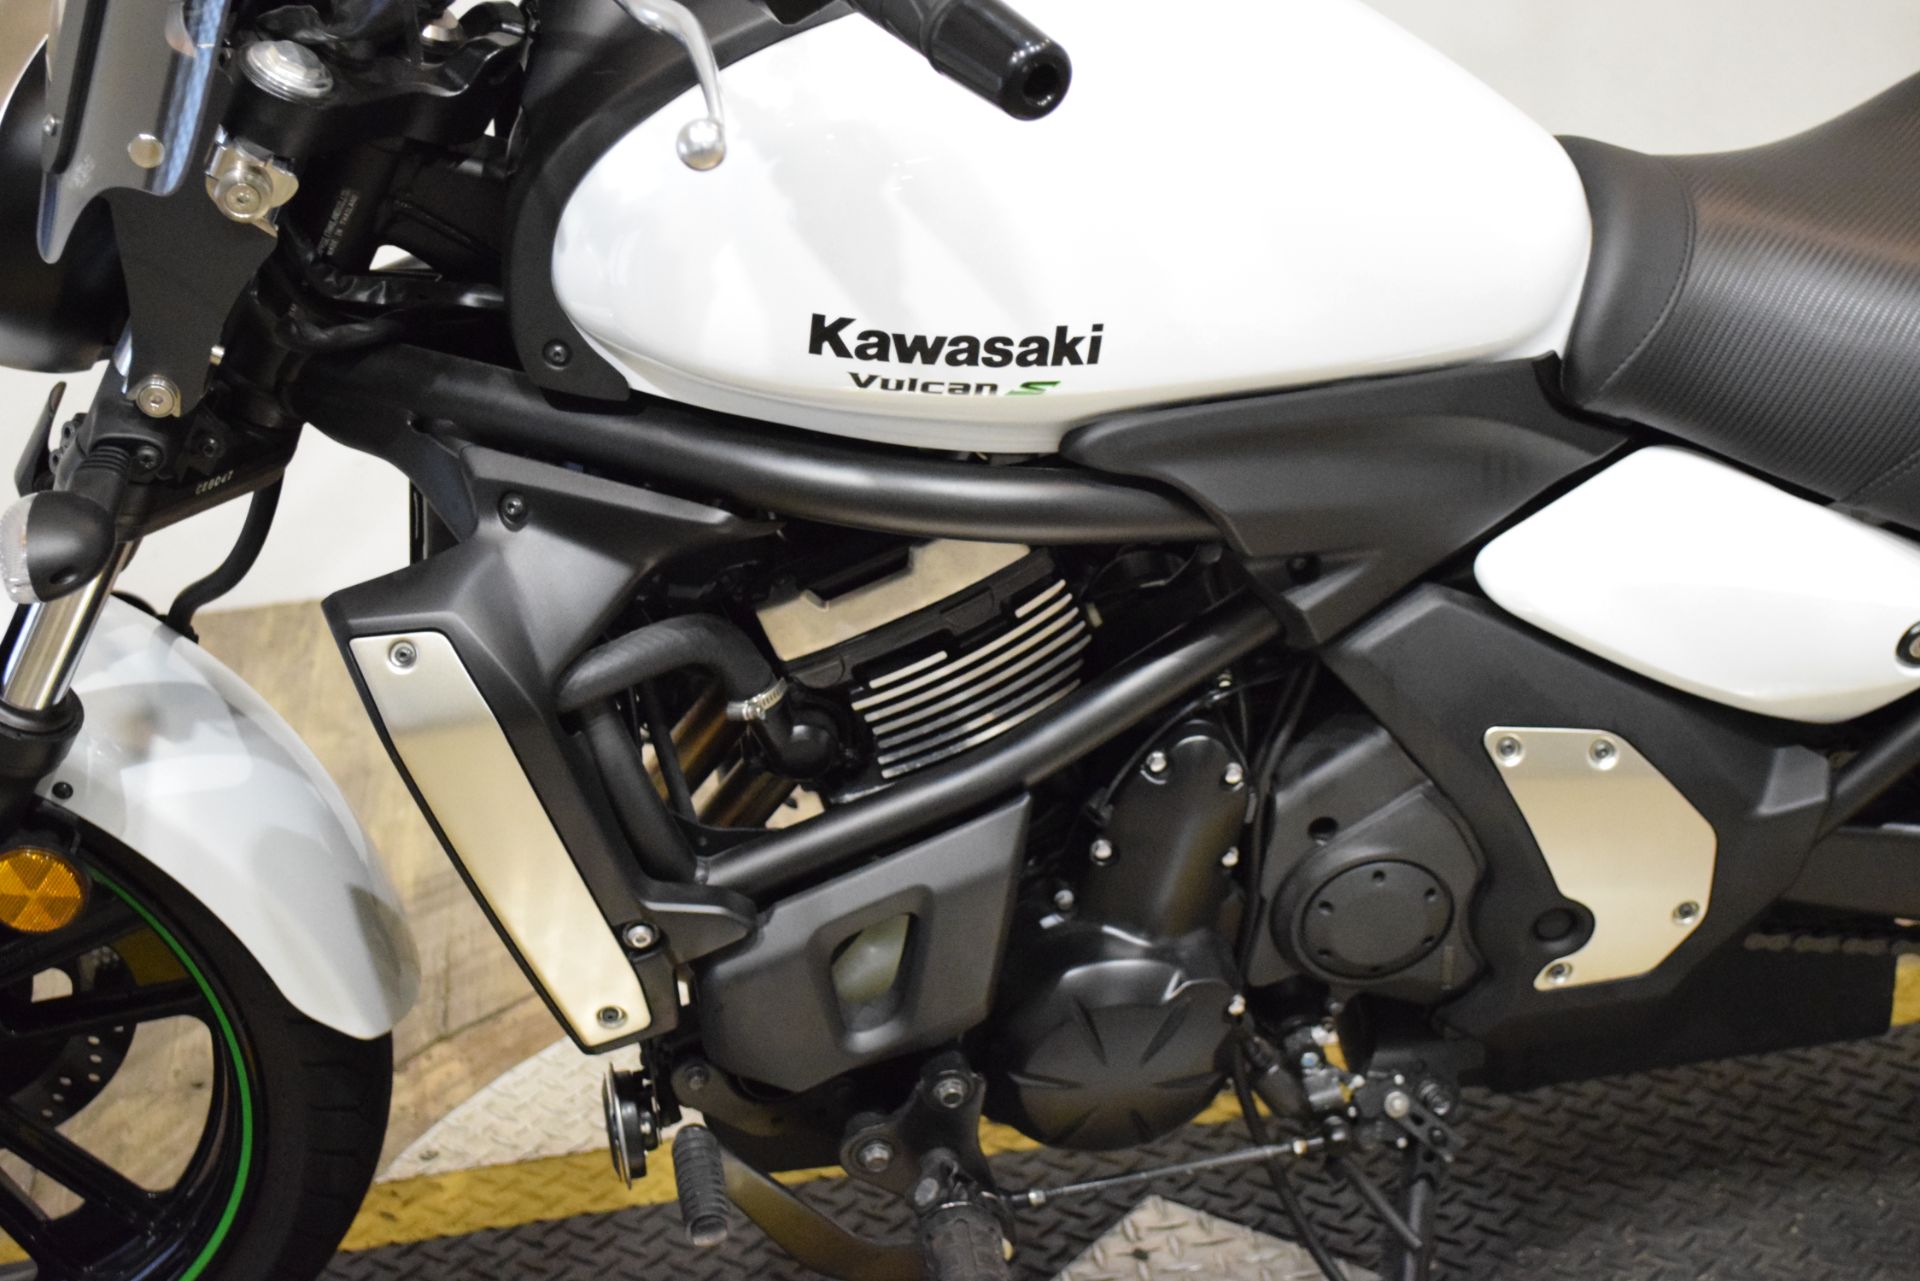 2015 Kawasaki Vulcan® S in Wauconda, Illinois - Photo 18